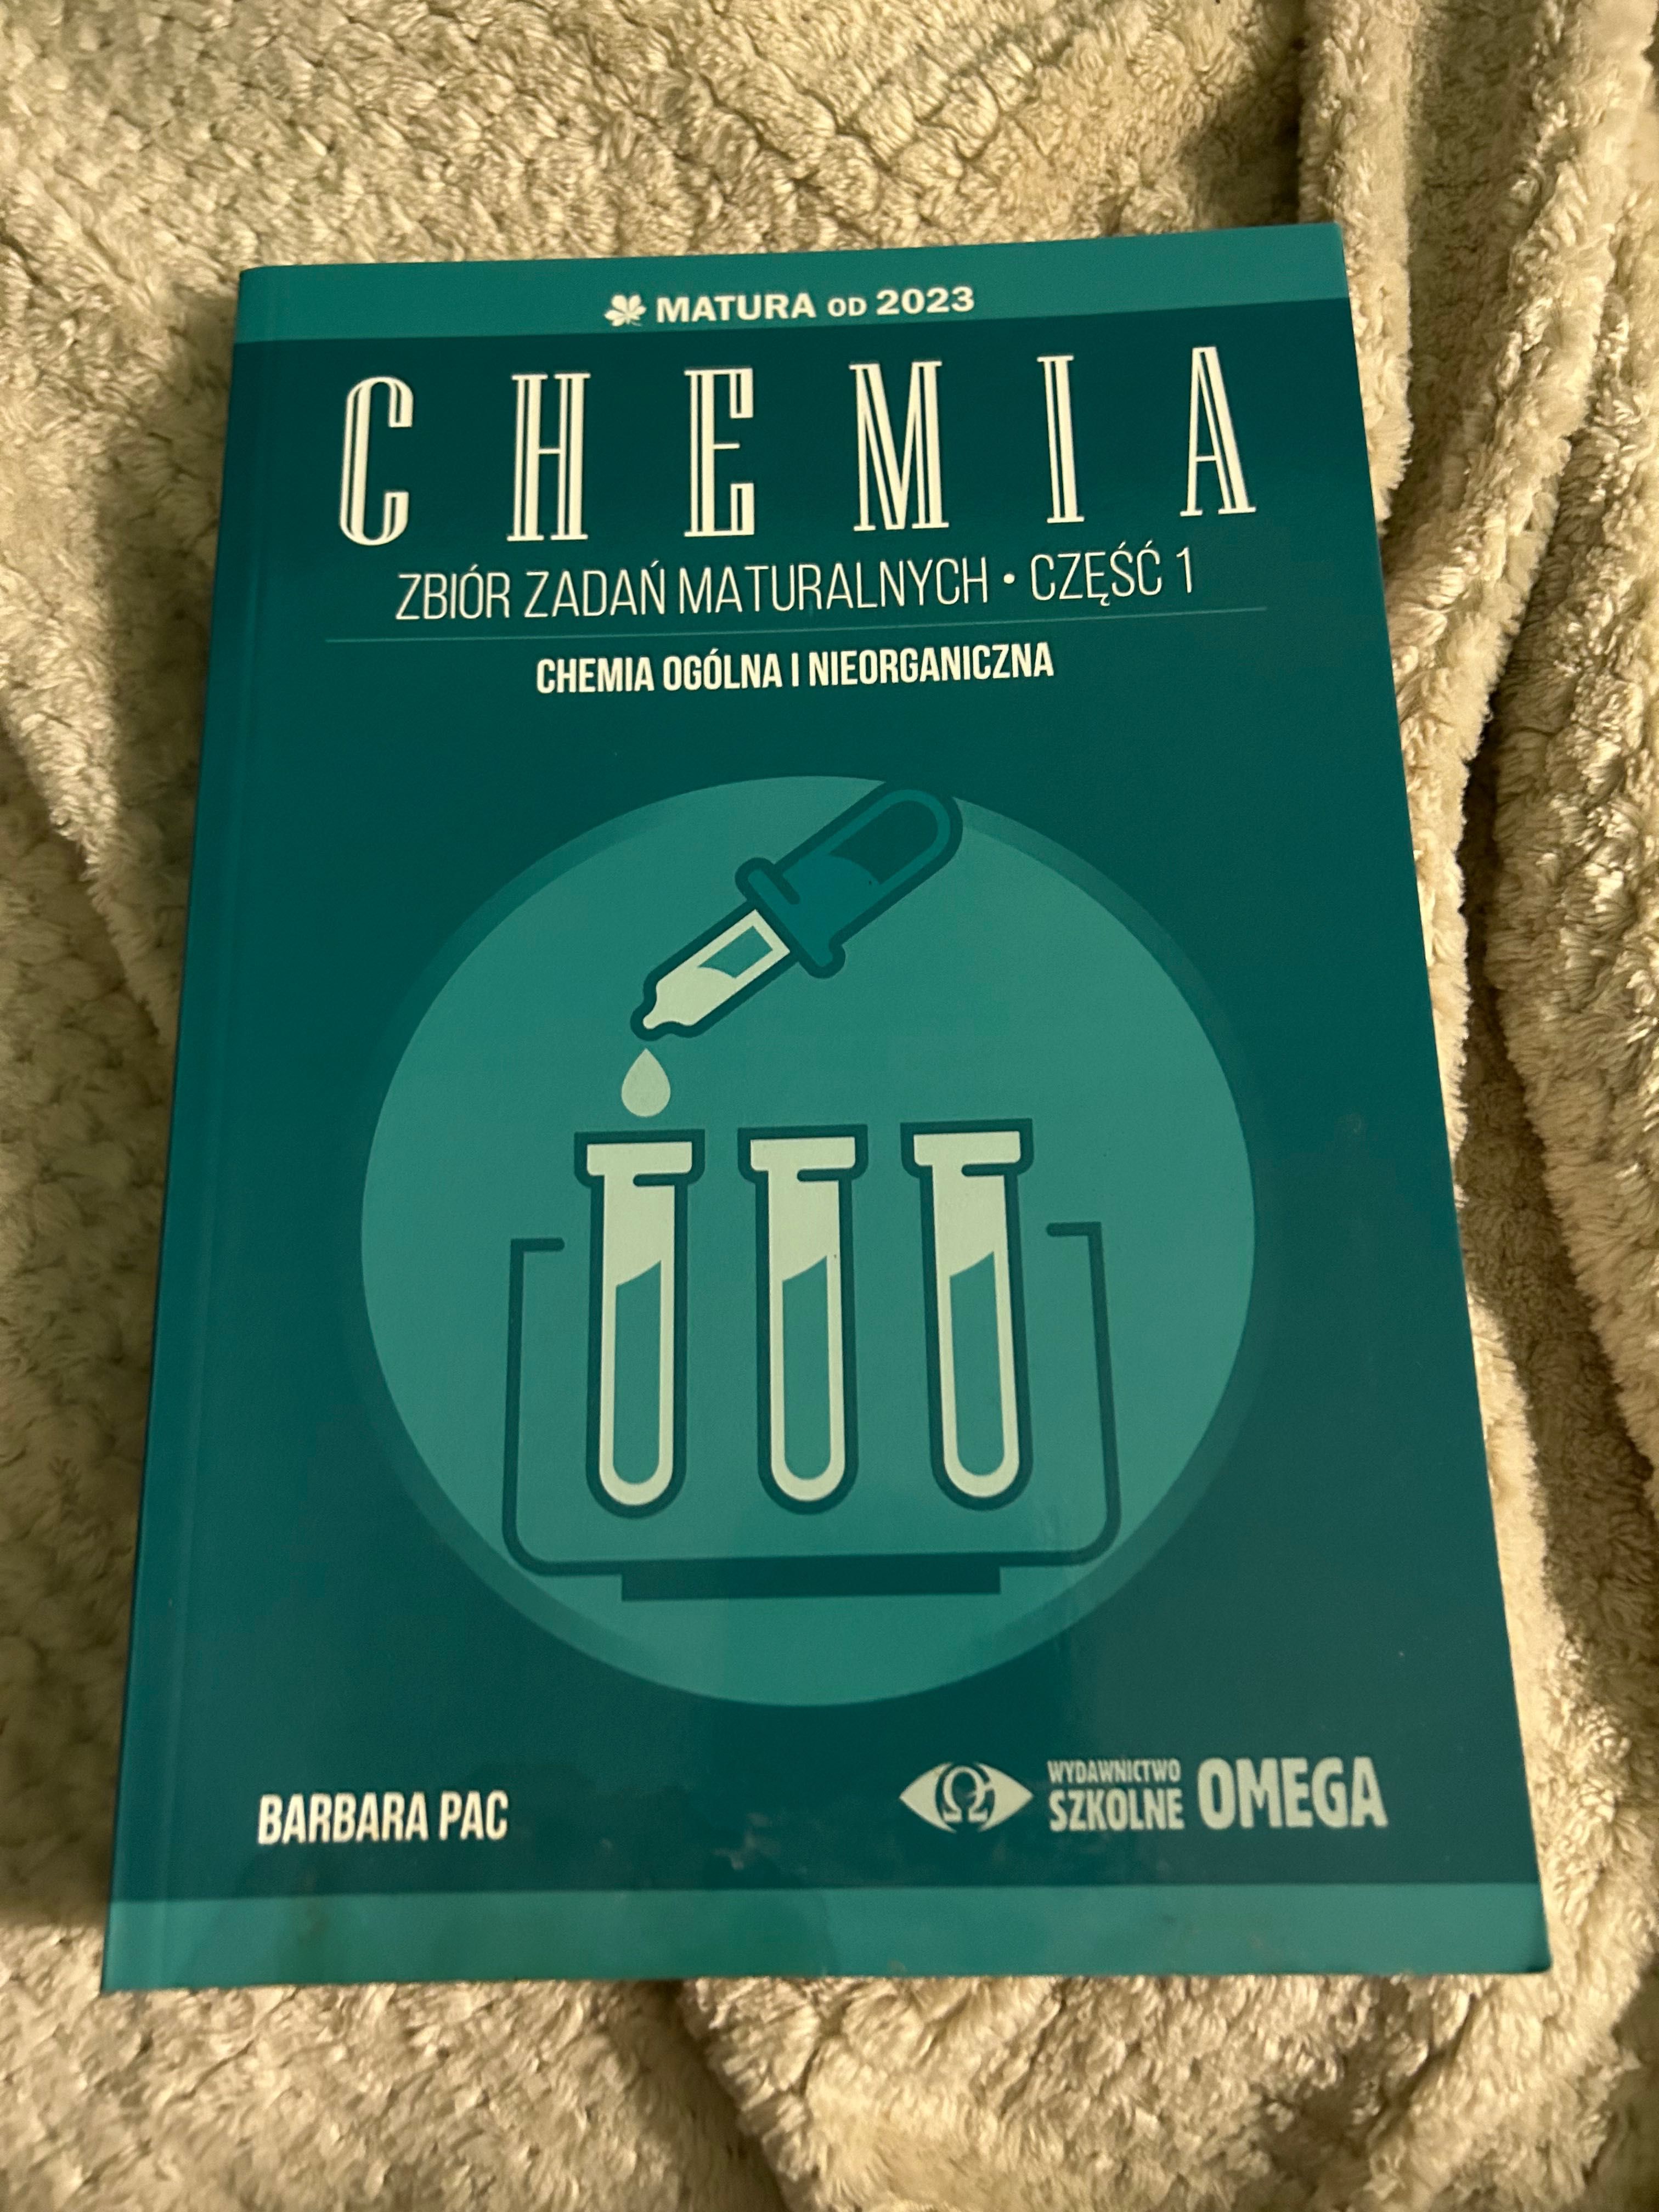 Repetytorium chemia wydawnictwa OMEGA + karty maturalne z chemii.